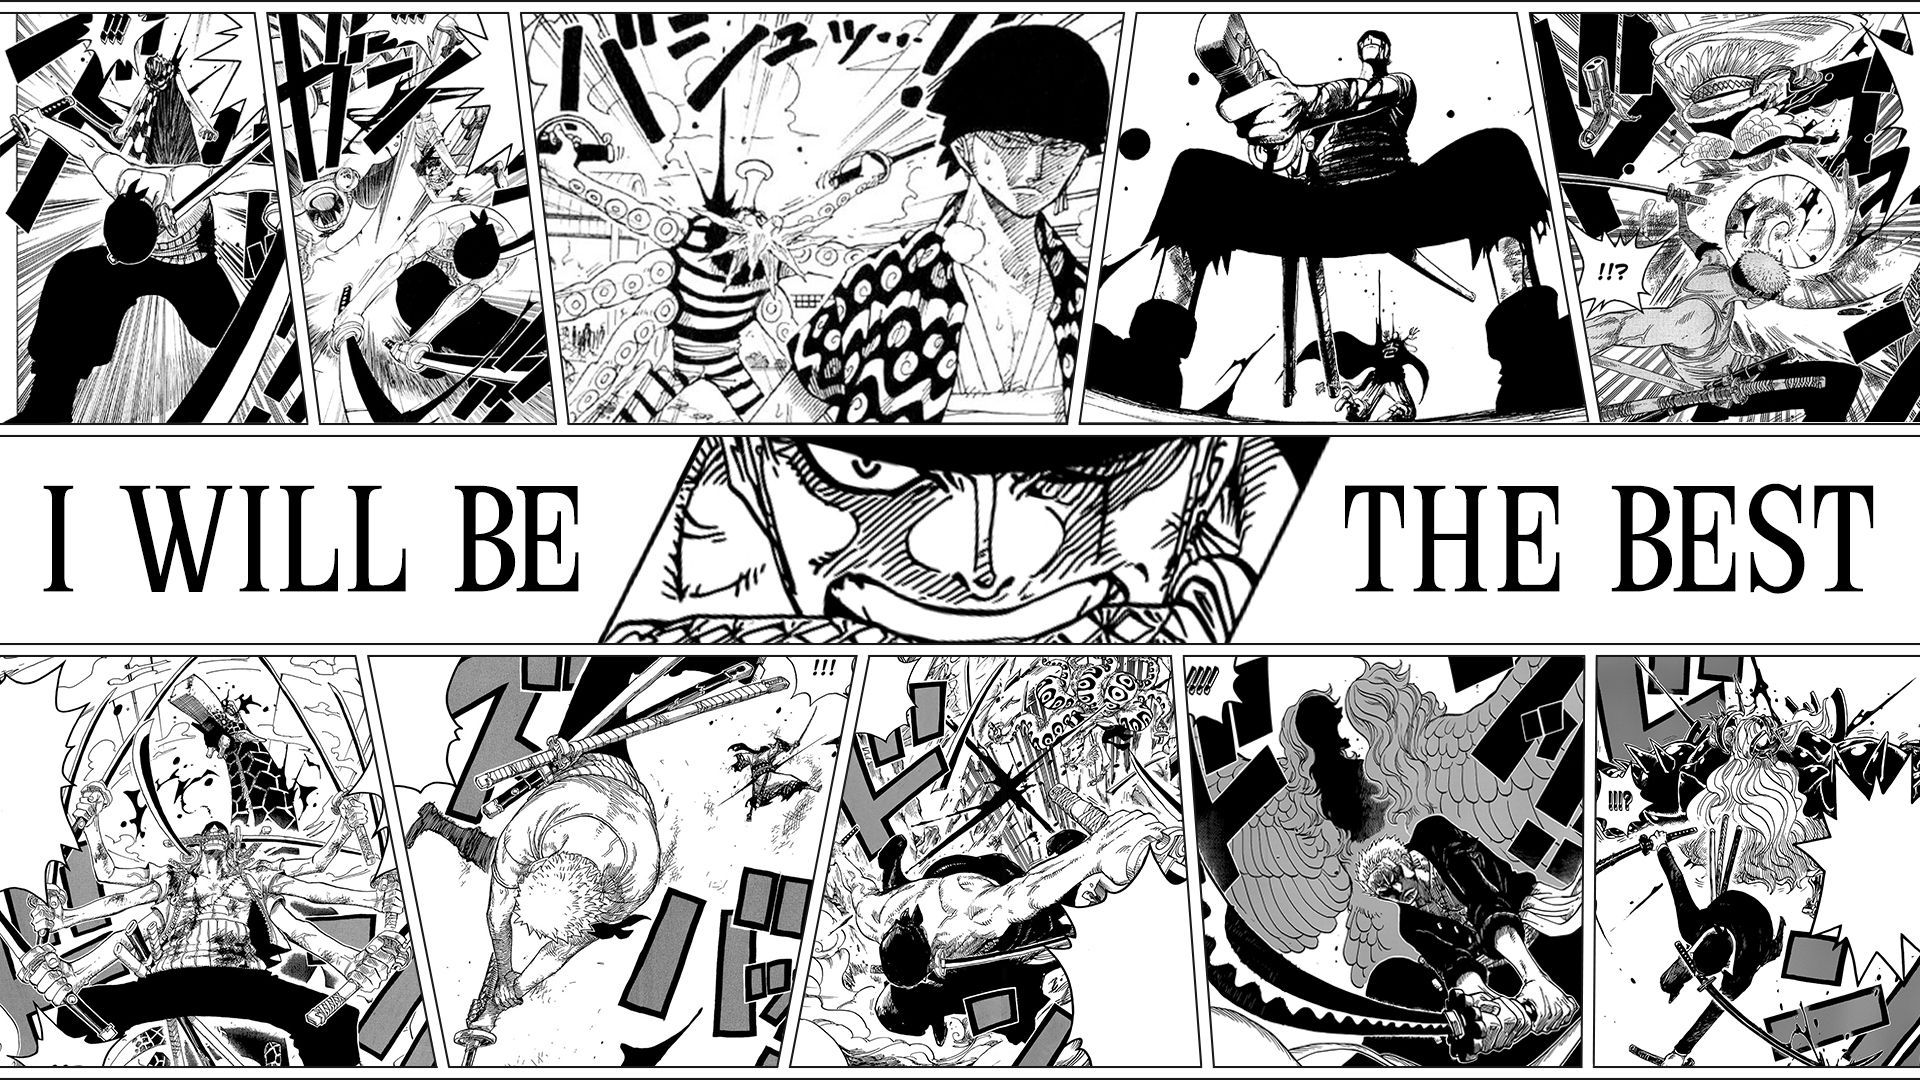 Zoro Manga Panel Wallpaper